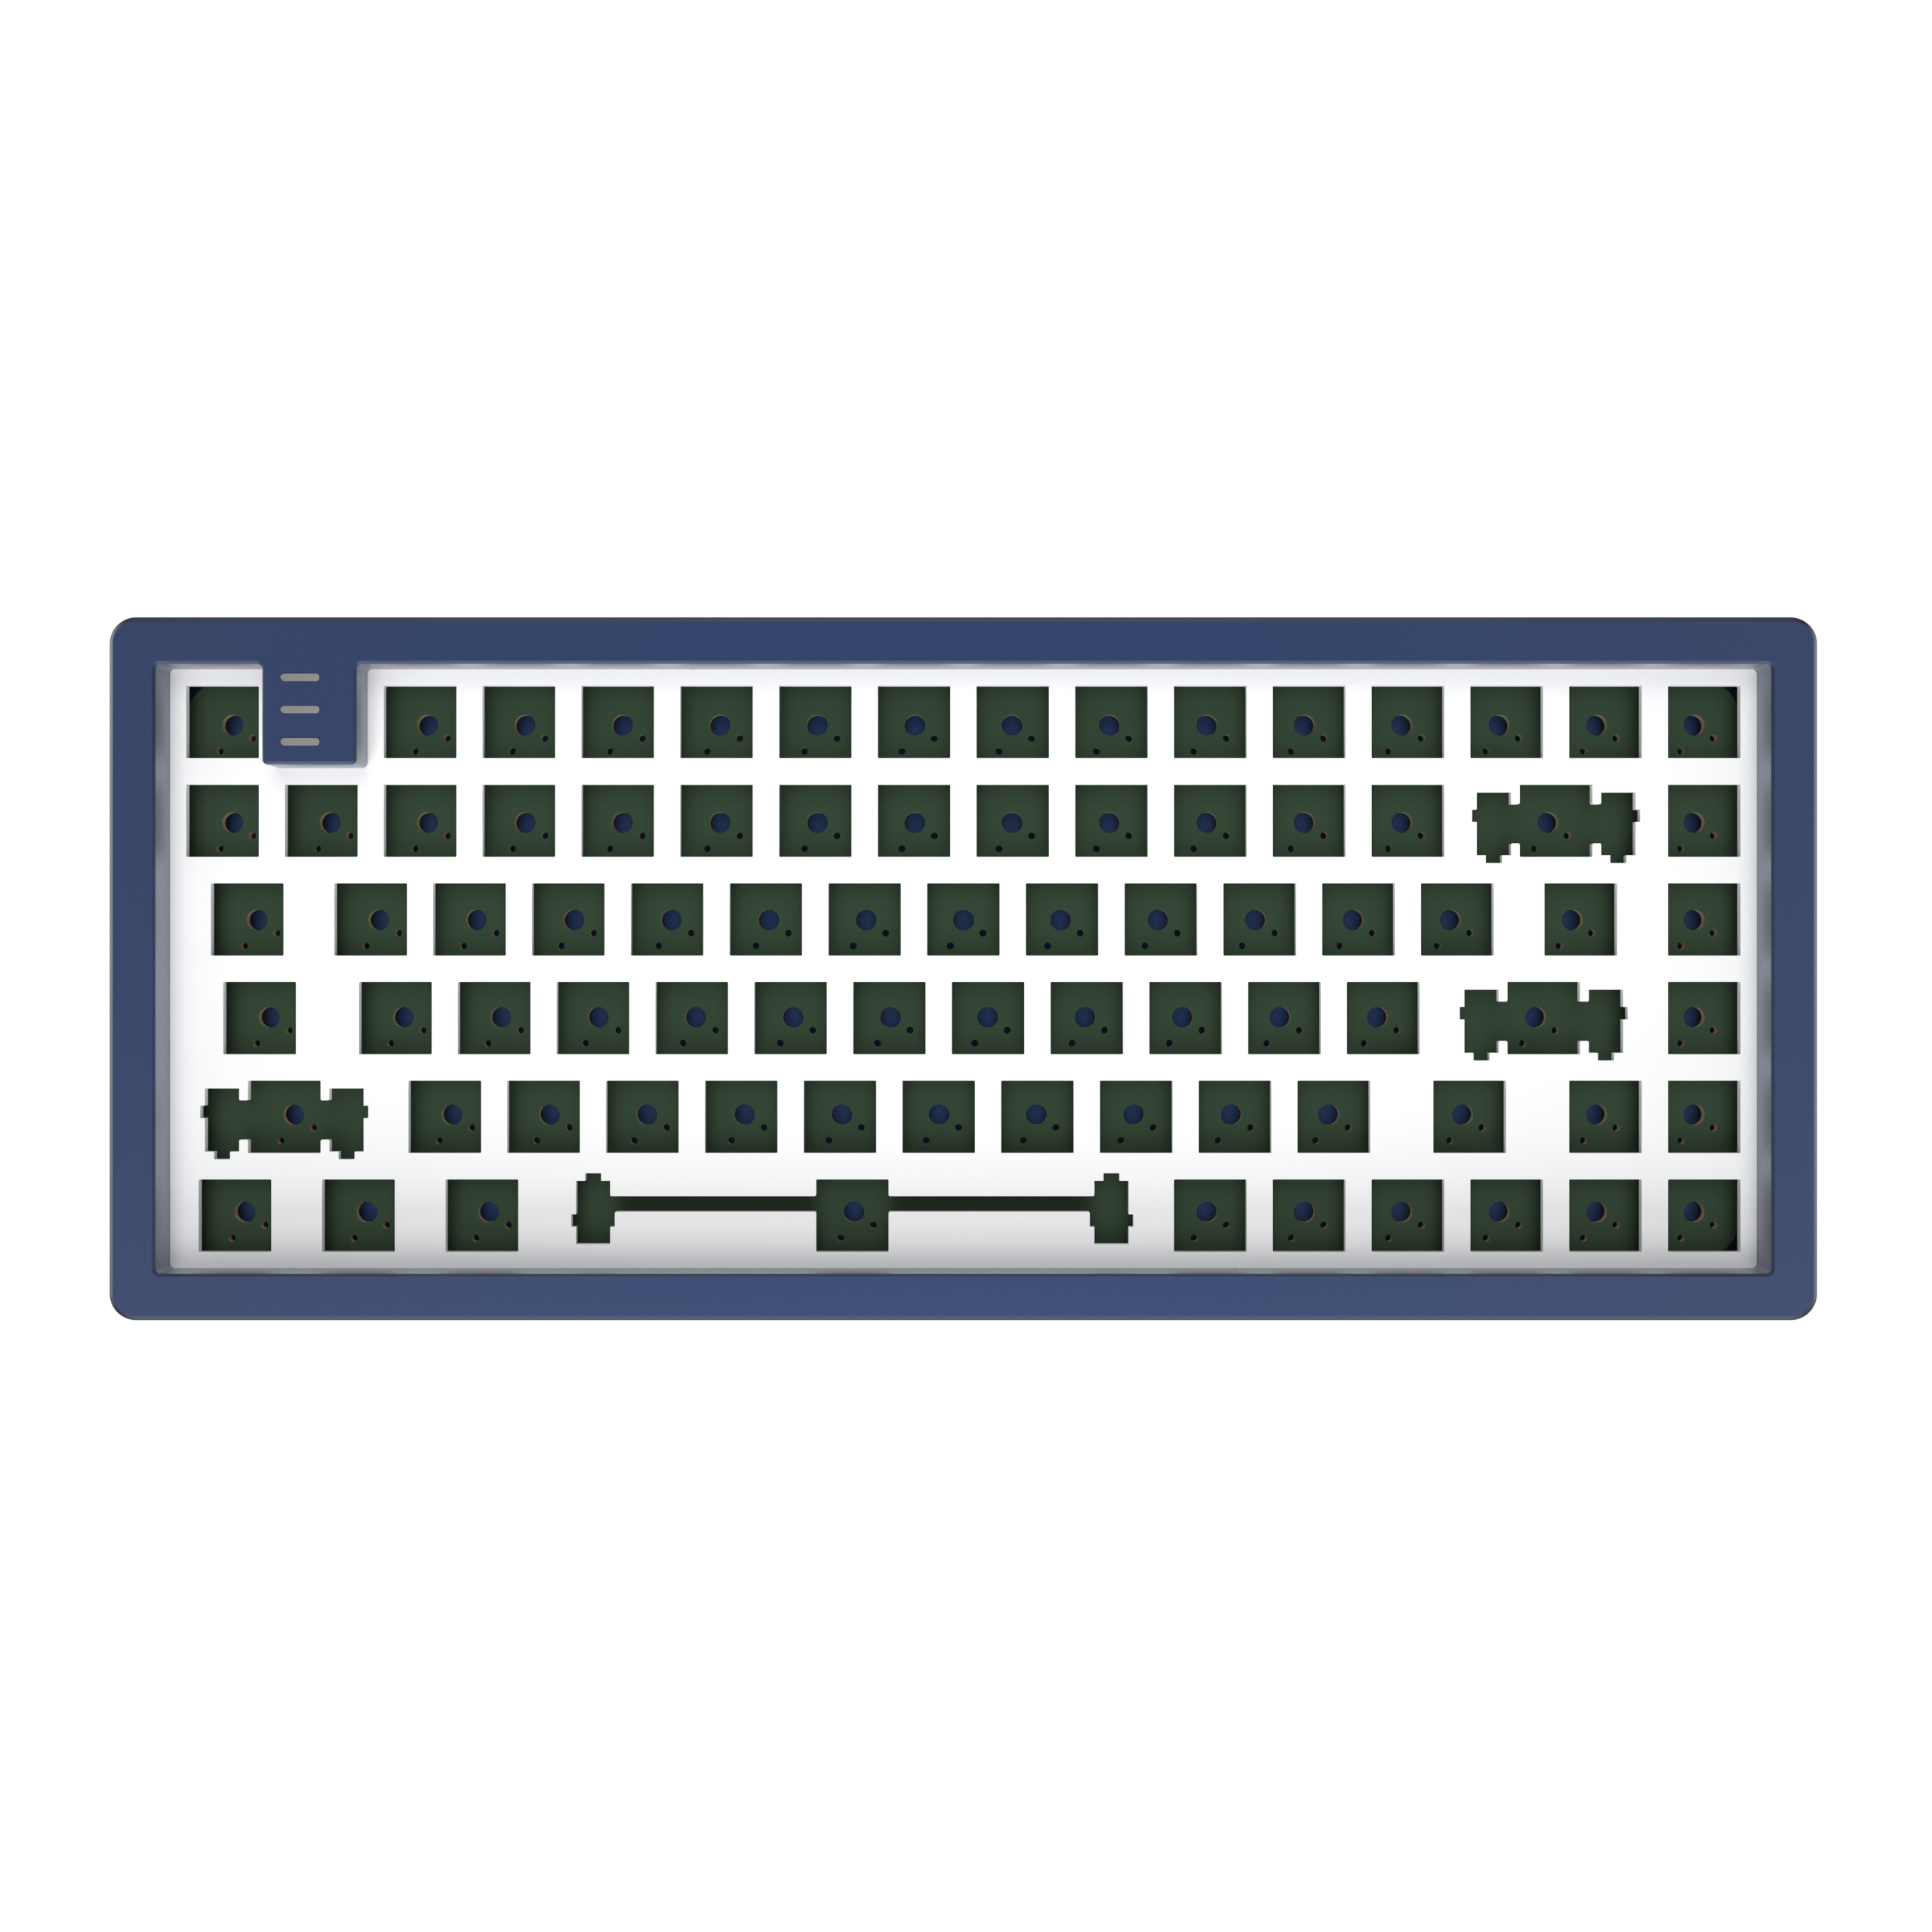 DARK PROJECT Blue Barebones, Navy Mechanisch - LTD Gaming KD83A Tastatur, Aluminium